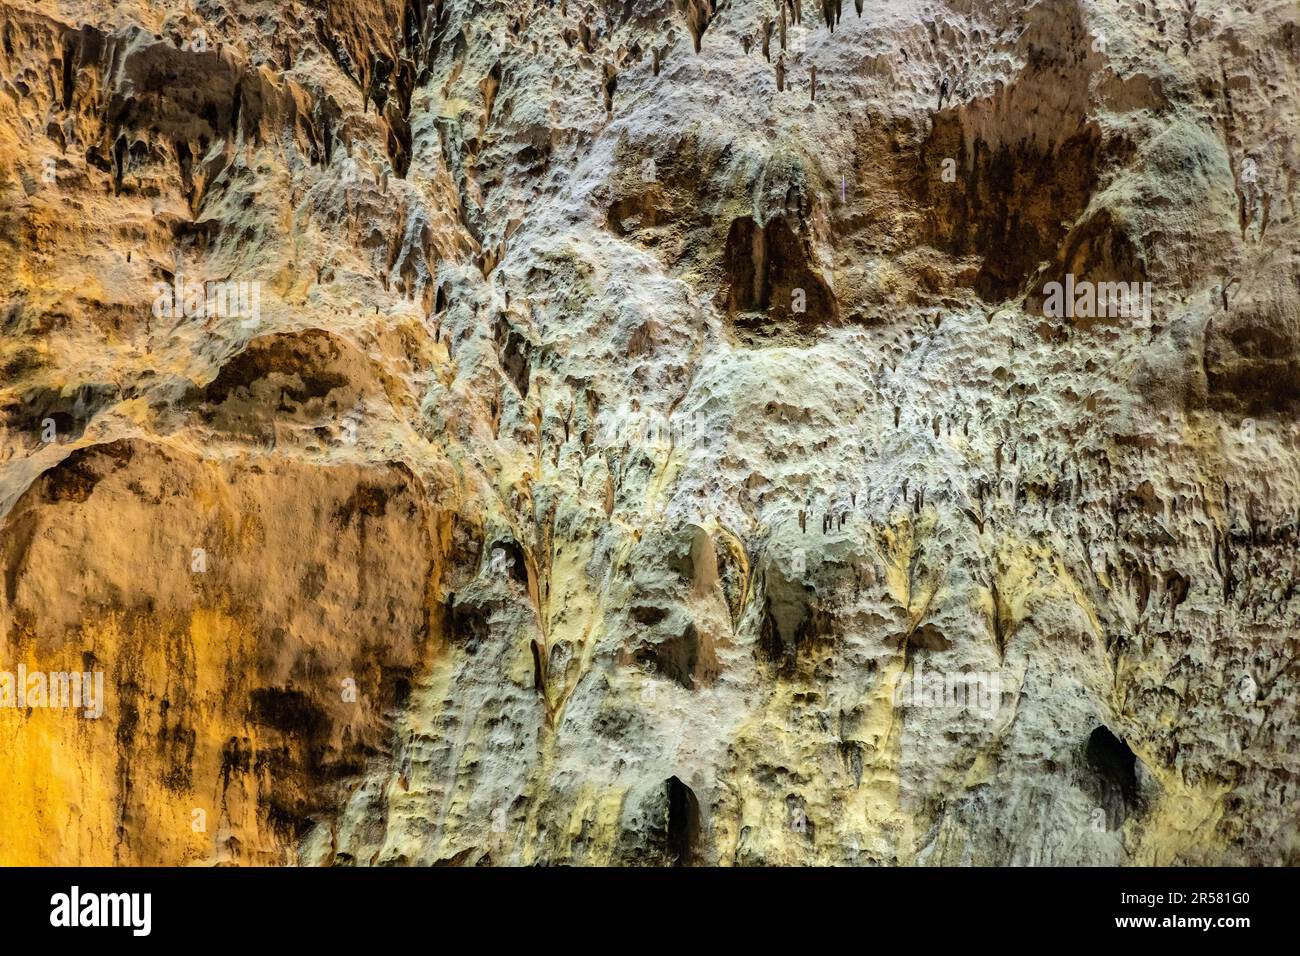 Caverna dei pipistrelli di pietra calcarea Jaskinia Nietoperzowa conosciuta per le specie multiple dei pipistrelli nidificanti nel villaggio di Jerzmanowice nella valle di Bedkowska vicino a Cracovia in Polonia Foto Stock